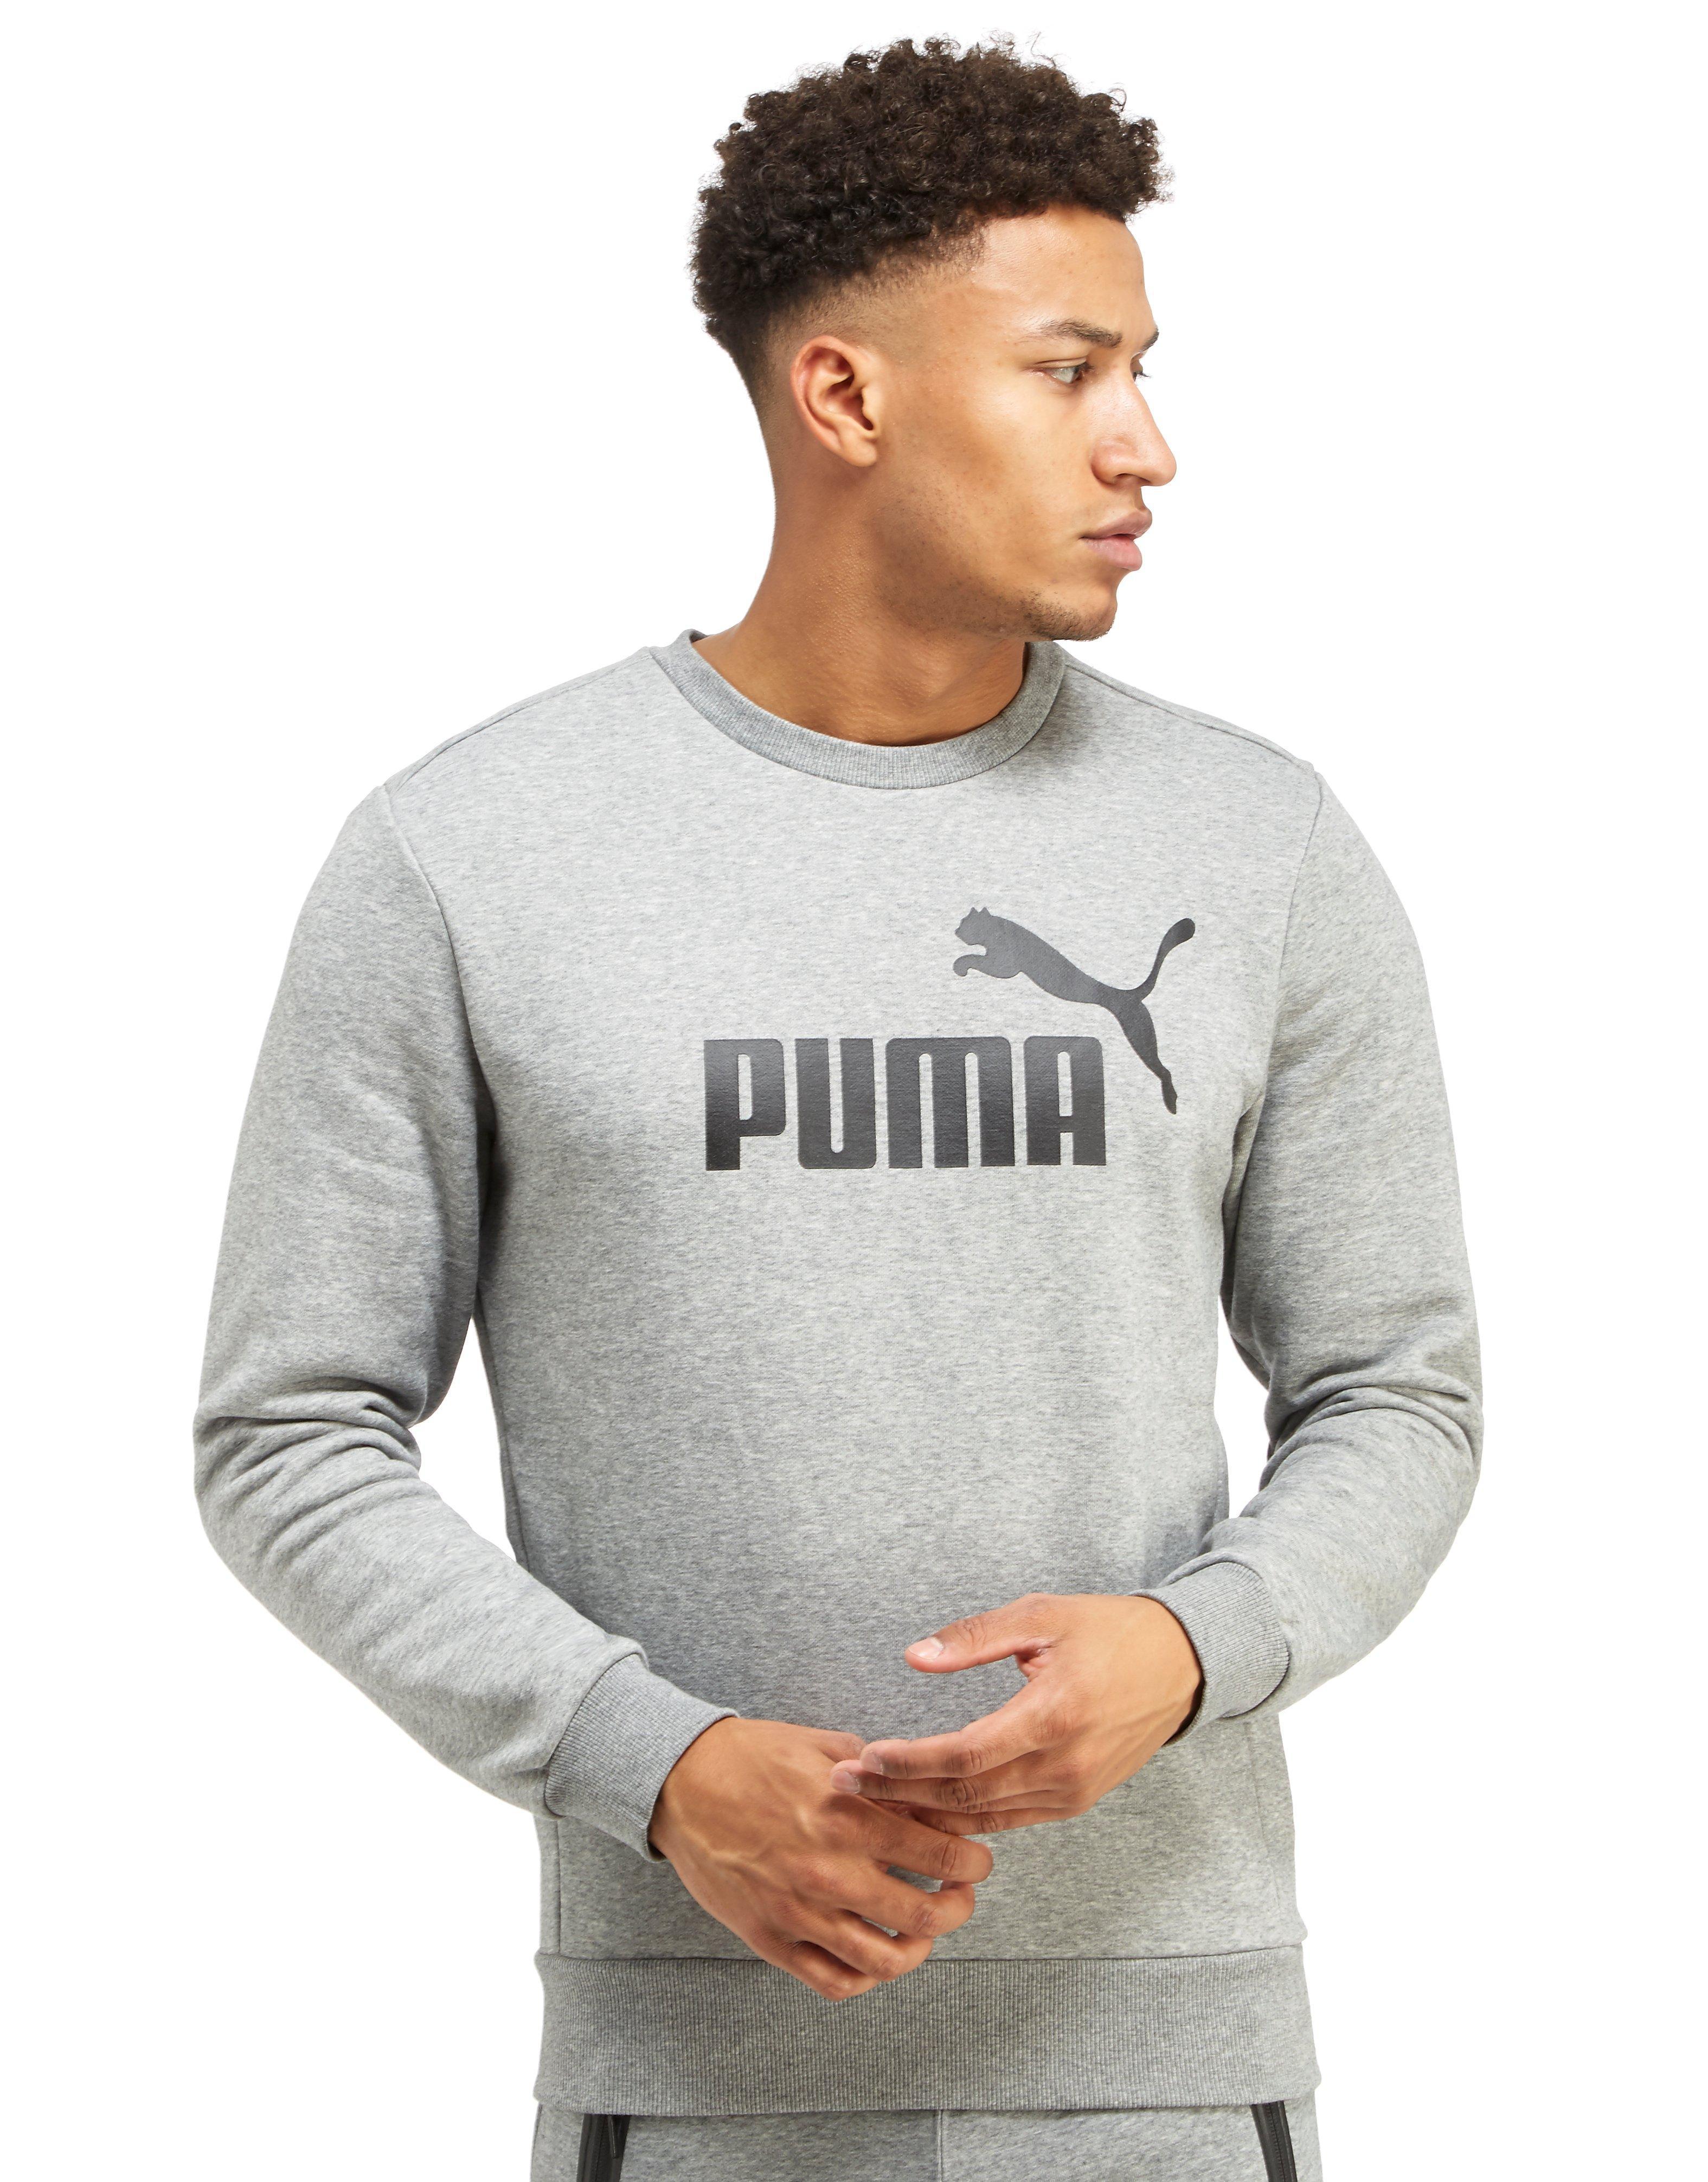 puma jumper grey